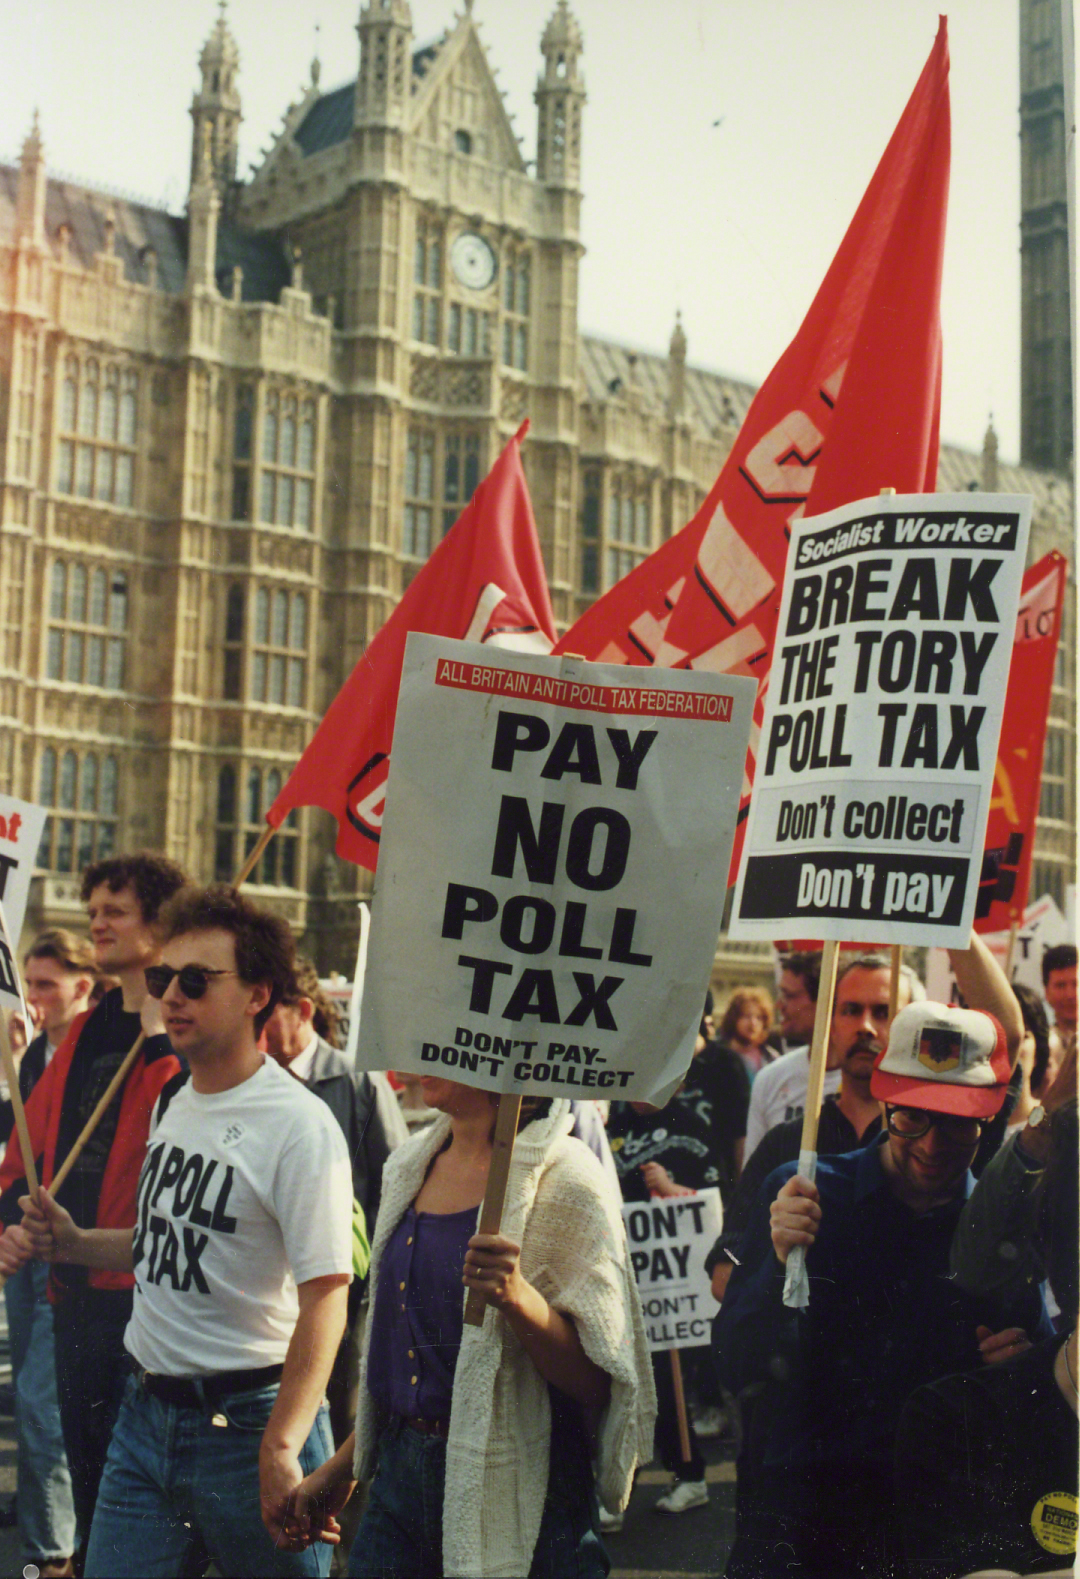 Marcha pacífica contra el impuesto comunitario poll tax en Reino Unido